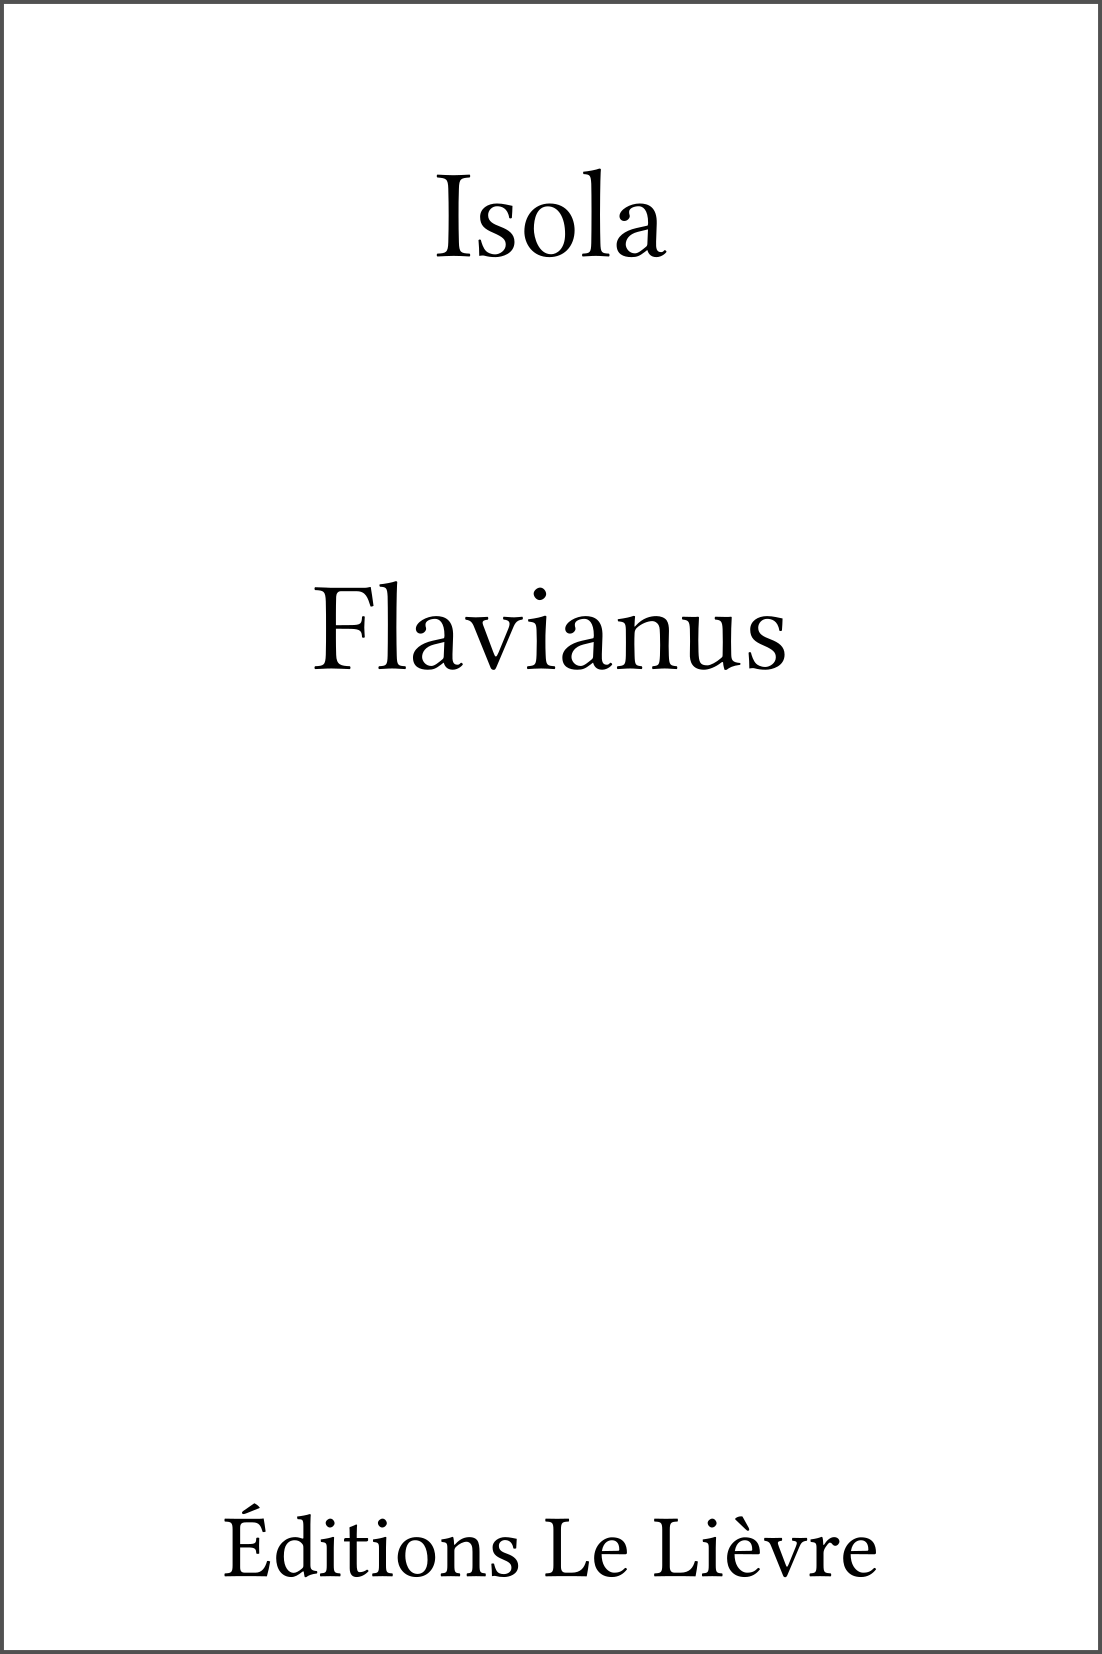 Couverture de Flavianus par Isola